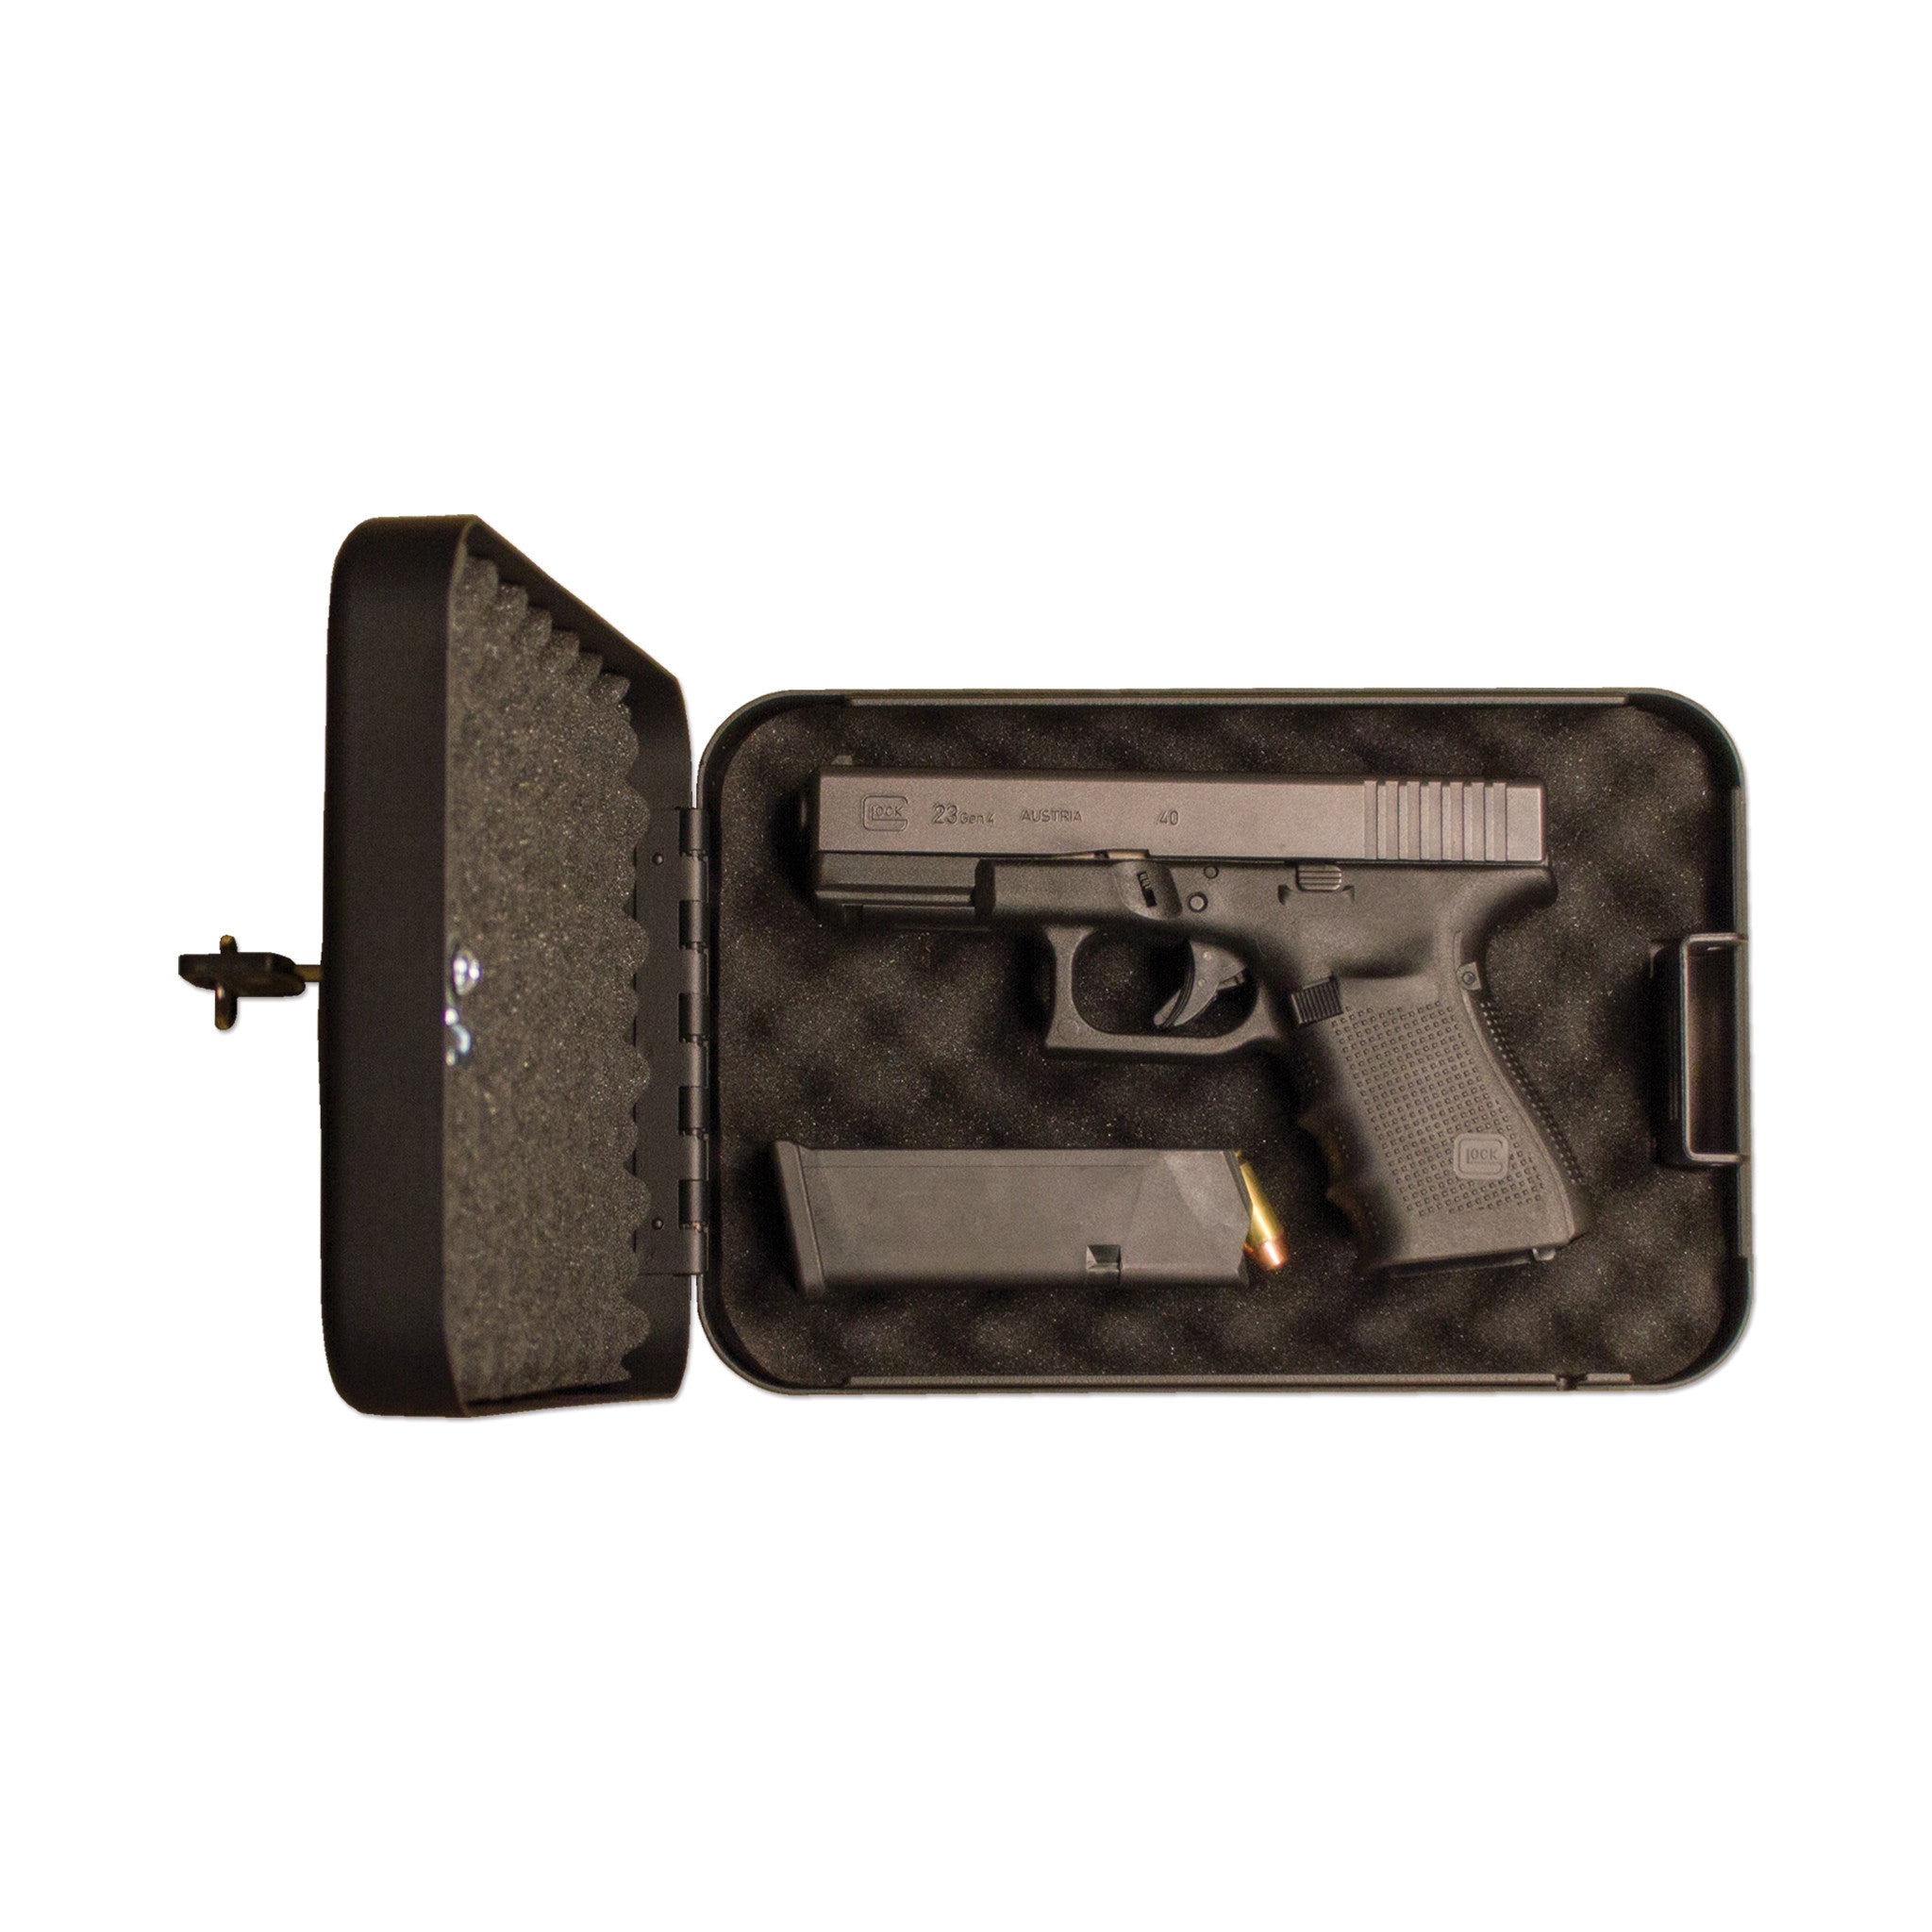 SPS-02 - Single Pistol Safe with Key Lock